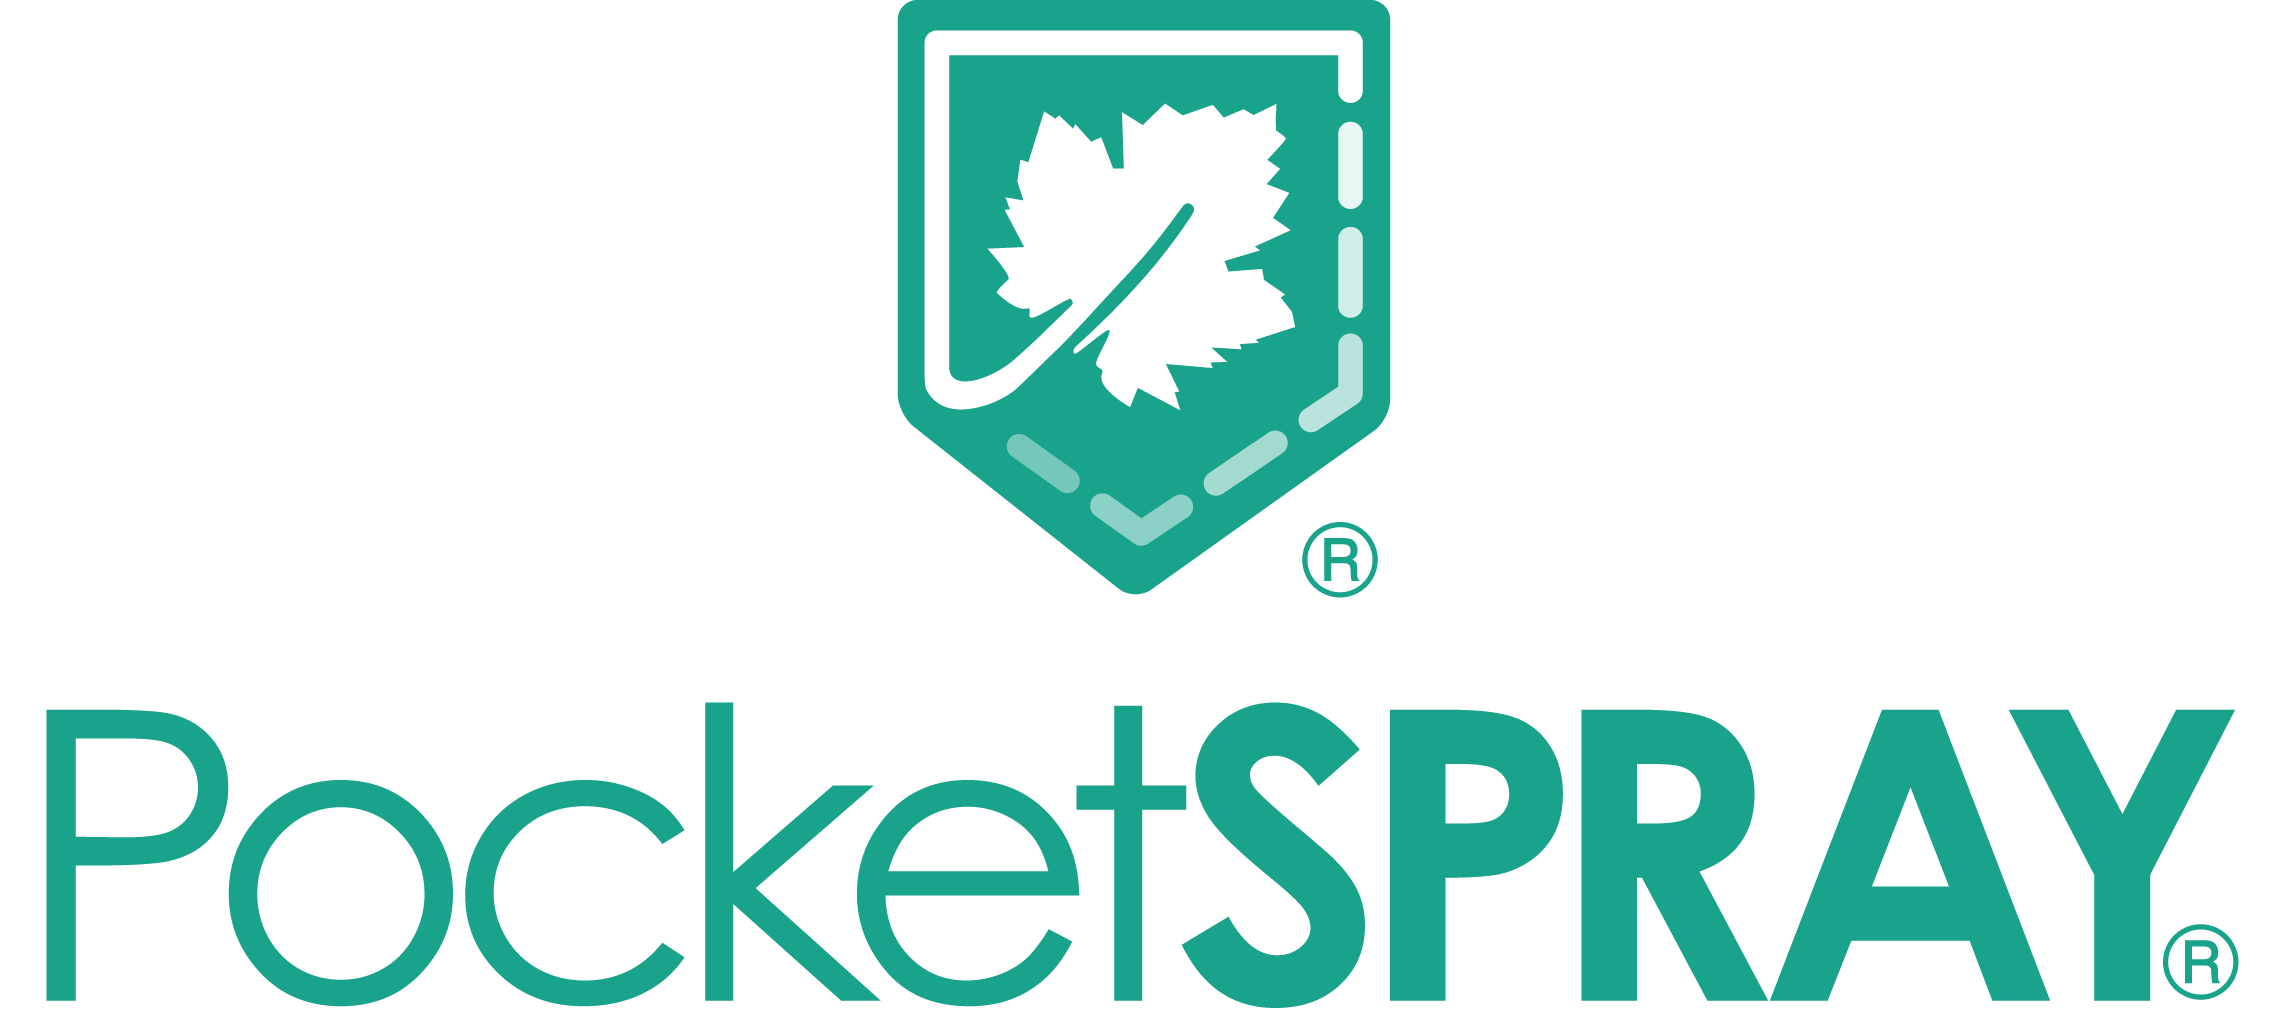 logo pocketspray